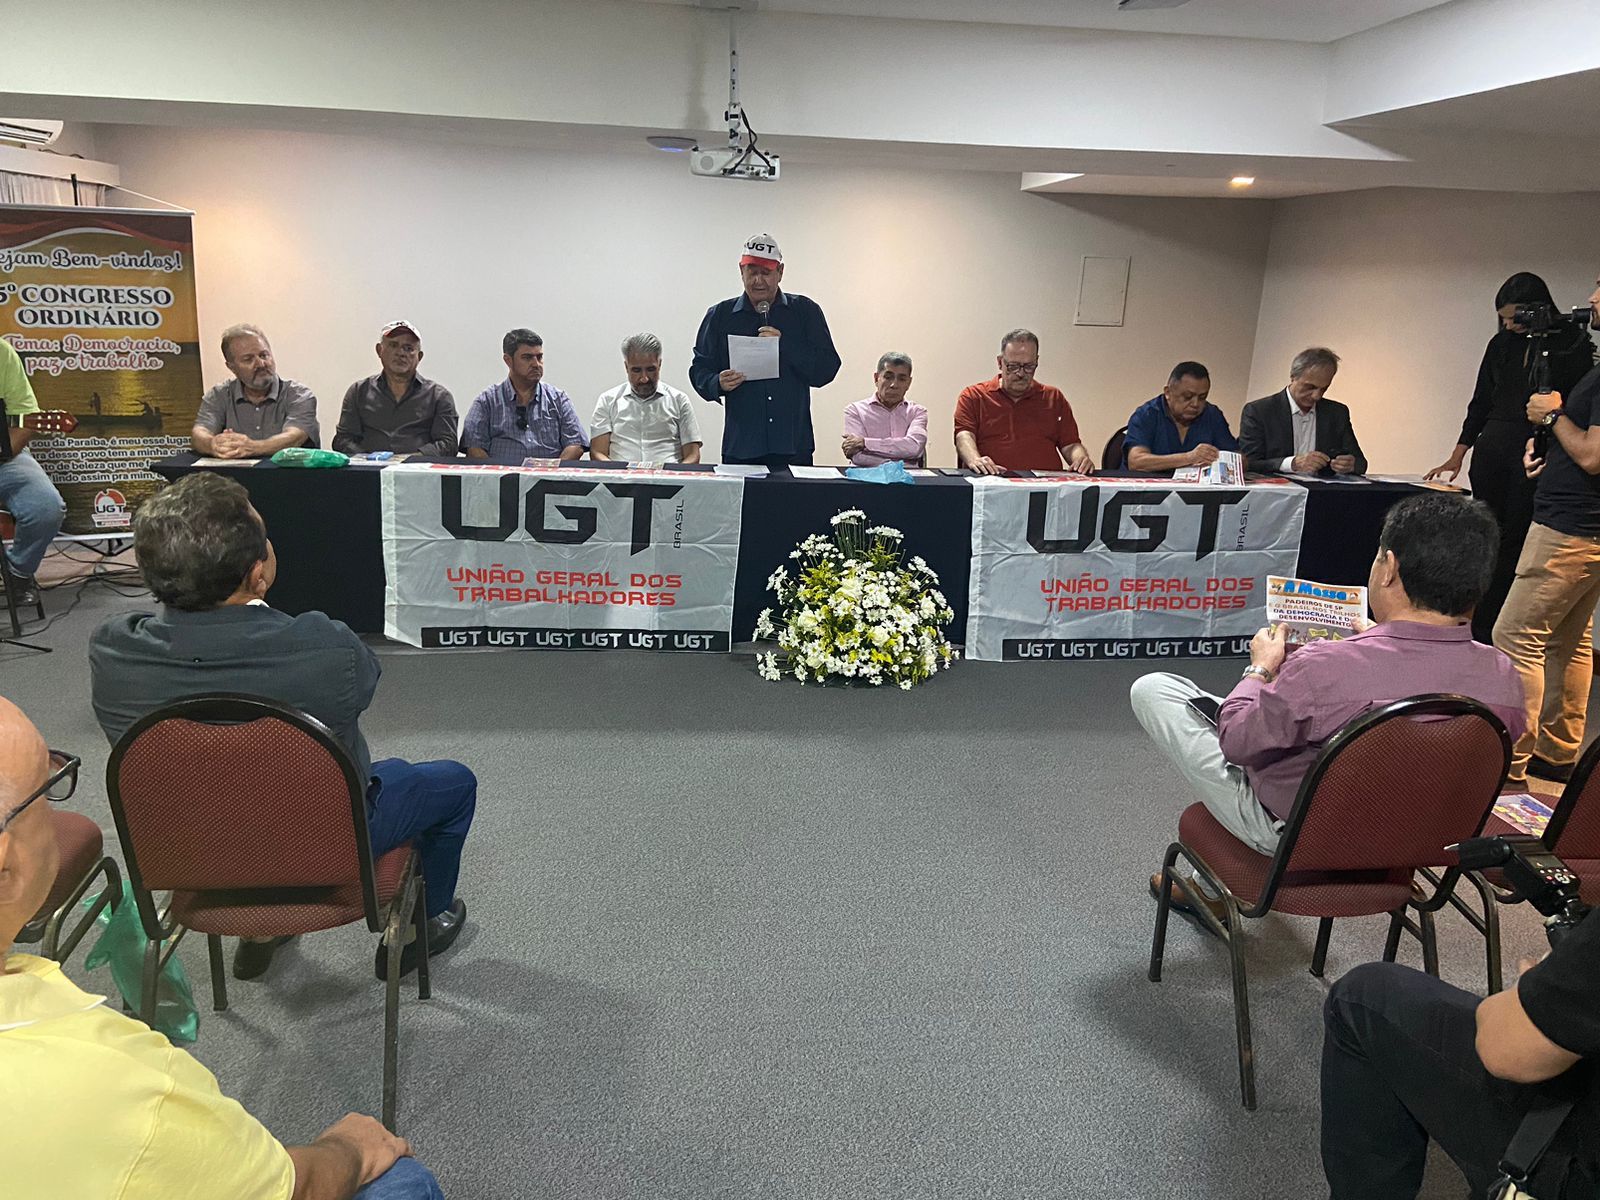 UGT Paraíba realiza 5º Congresso Ordinário